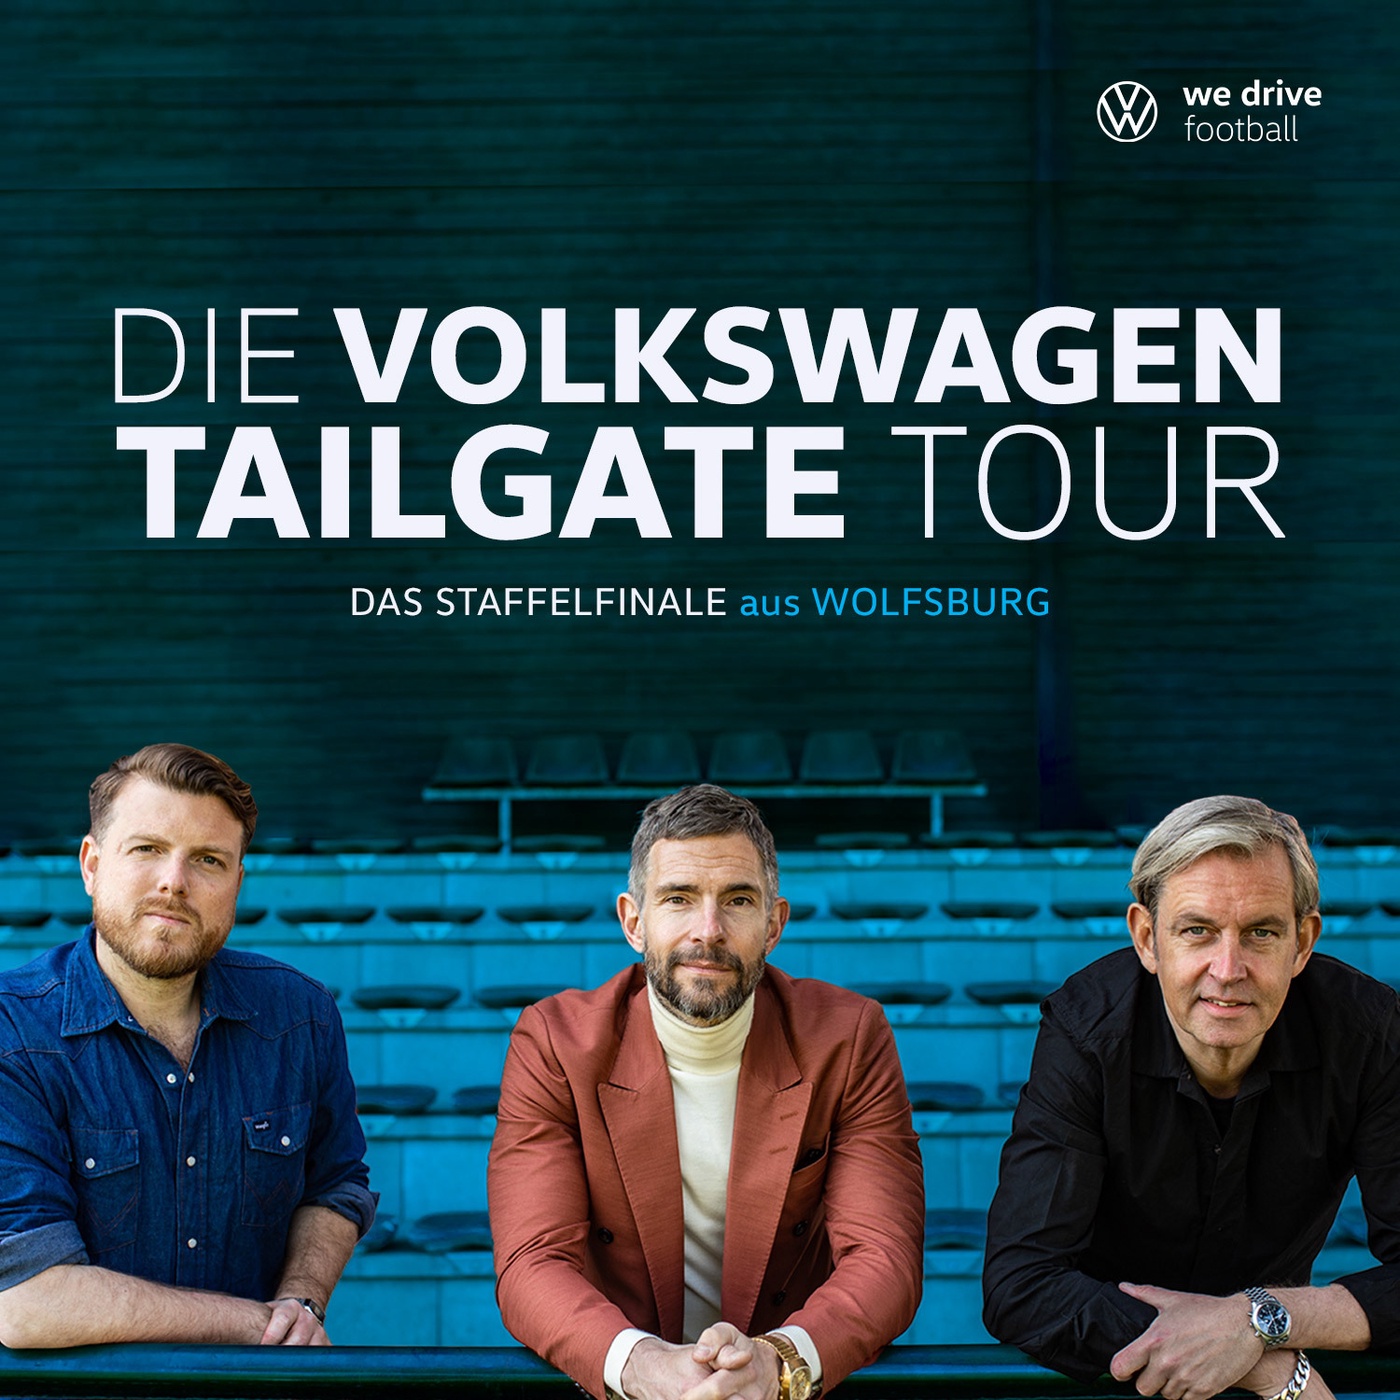 Volkswagen Tailgate Tour LIVE - Das Staffelfinale